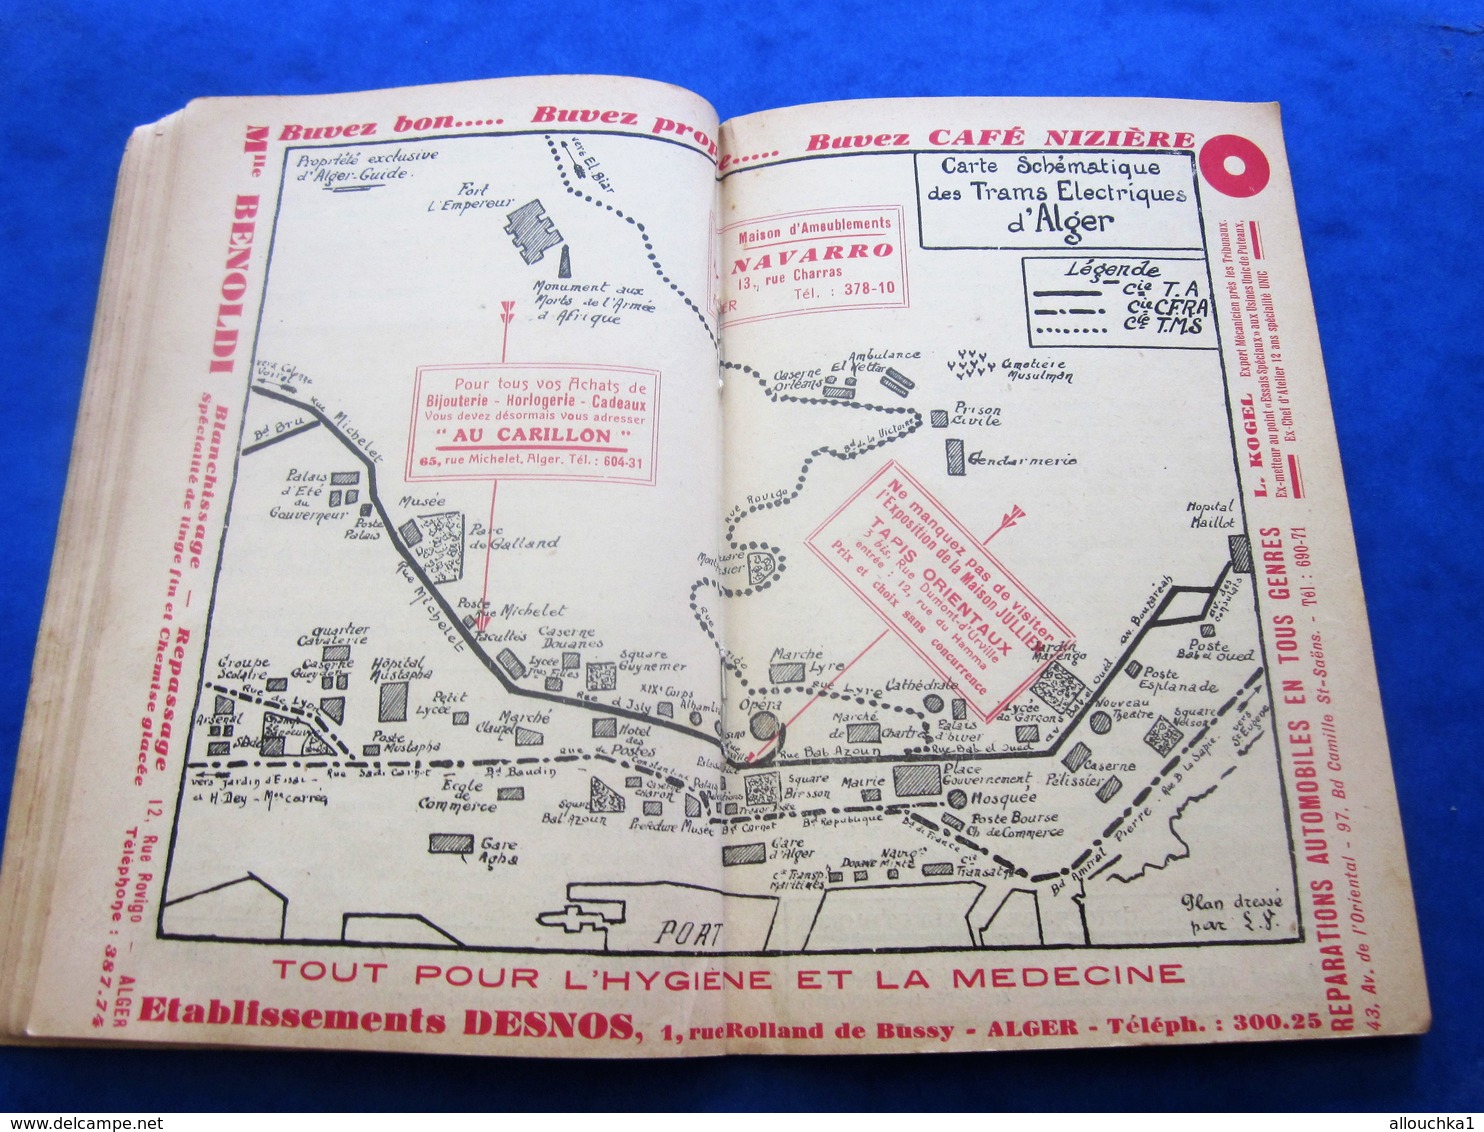 1939 ALGER PLANS GUIDE TOURISTIQUE-RUES-TRAMWAY-BUS-TRAINS-BATEAUX-PUB L’AIGLON-BRASSERIE-HÔTEL-RESTO-GALERIES DE FRANCE